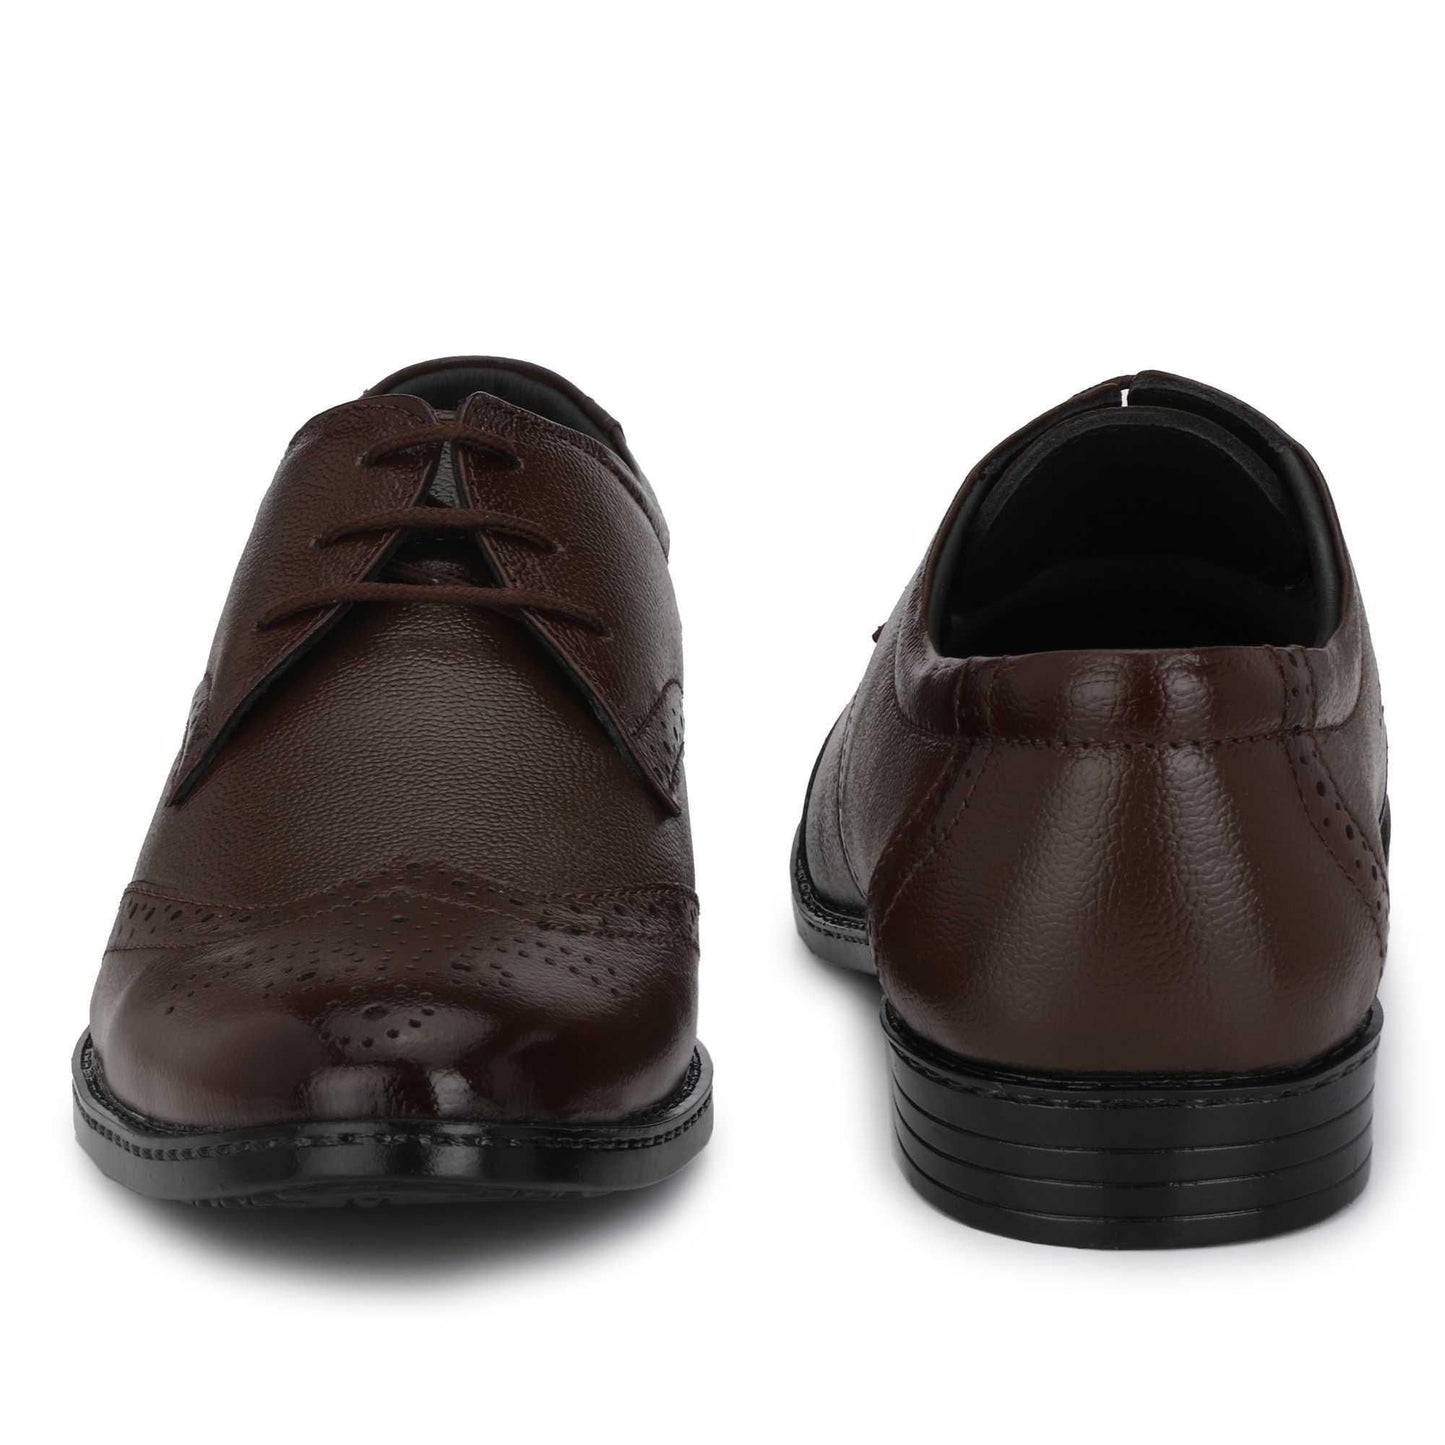 AM PM Bucik leather Formal Shoes